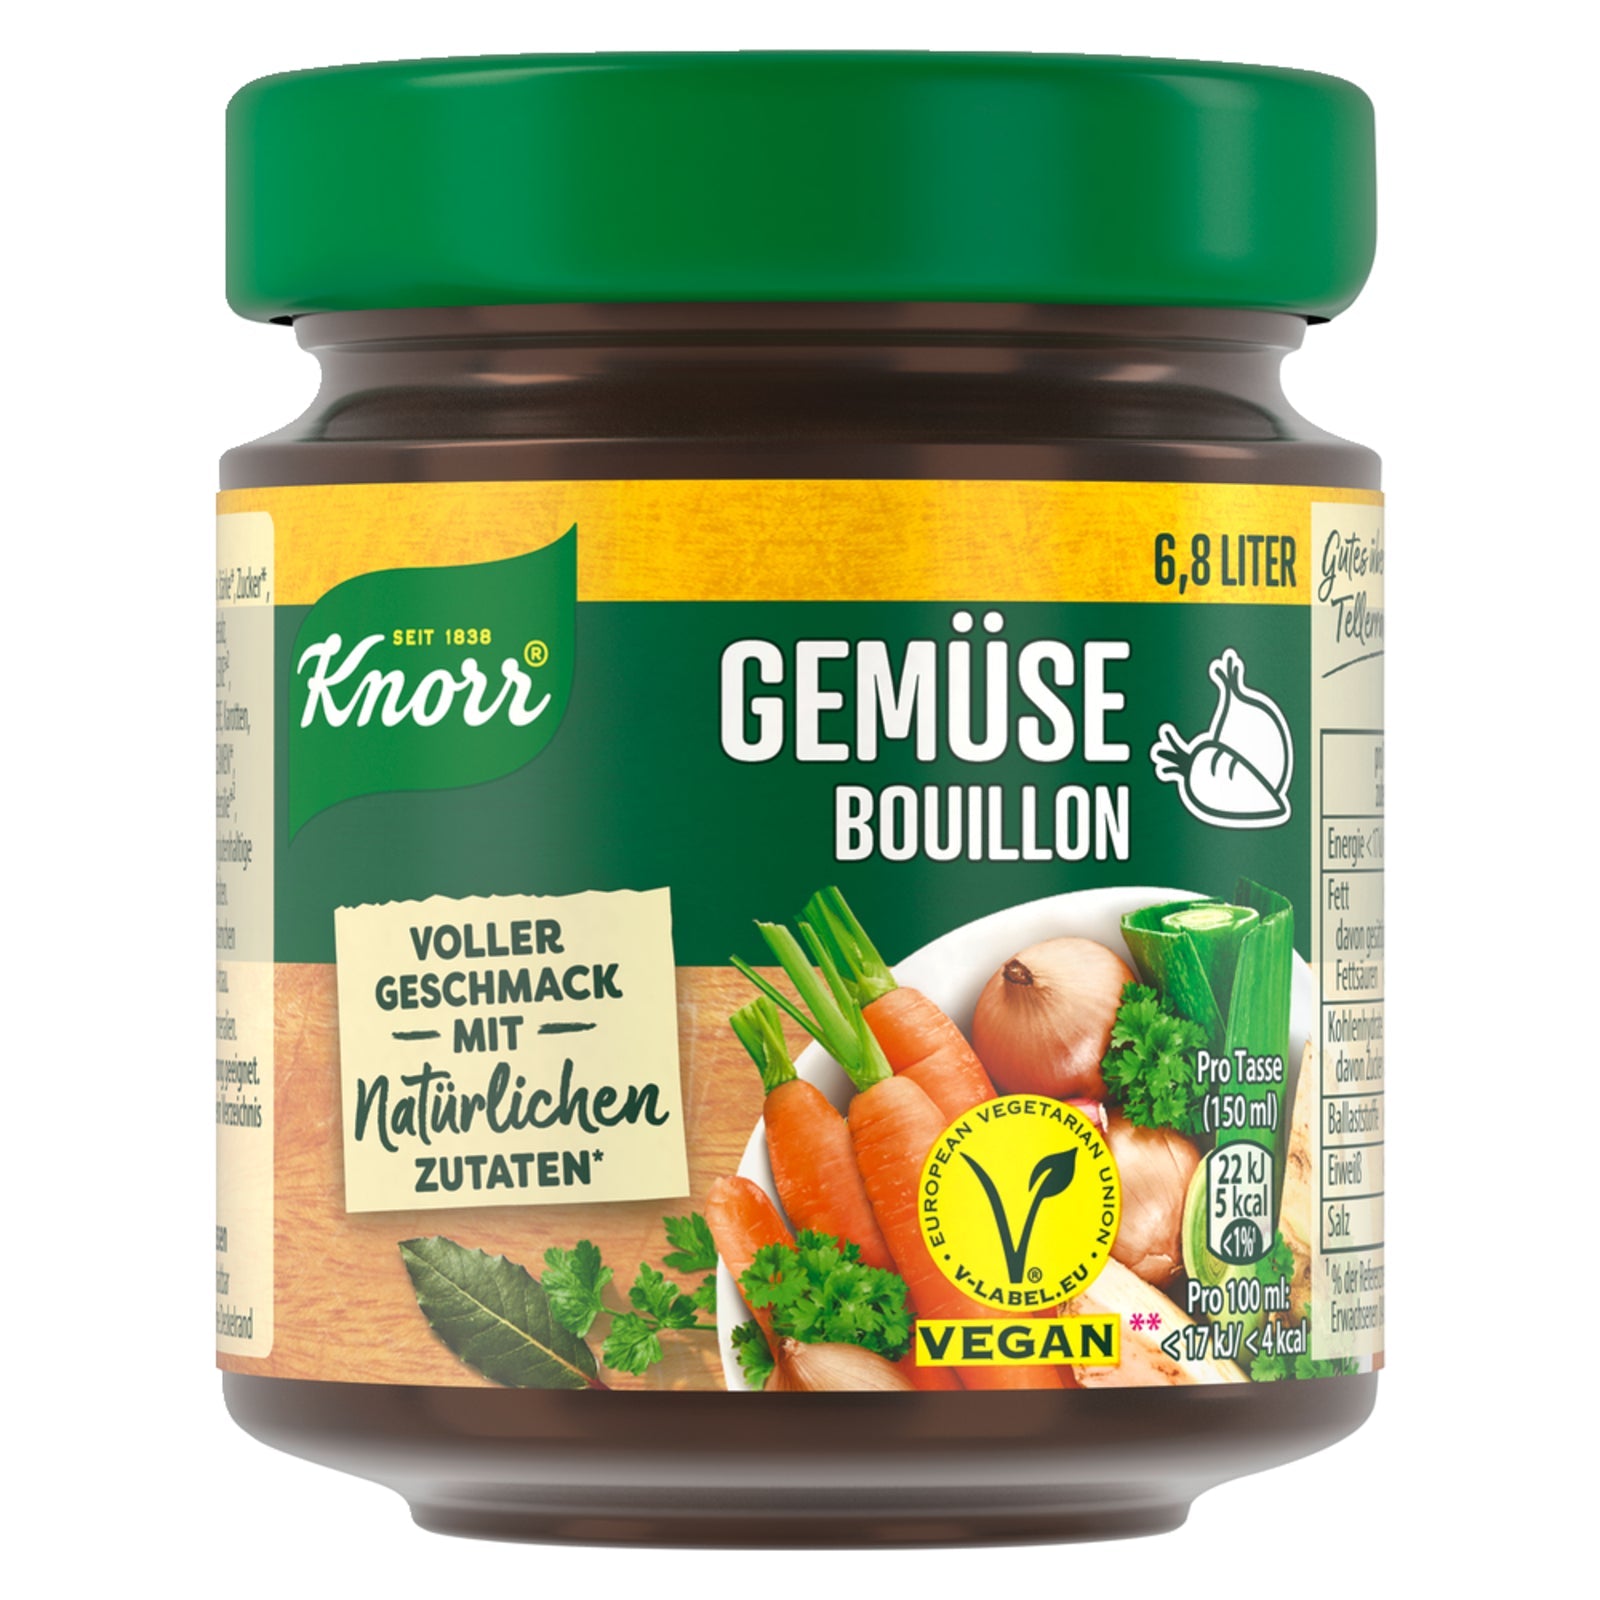 Knorr Gemüse Bouillon im Glas mit vollem Geschmack vegan 136g